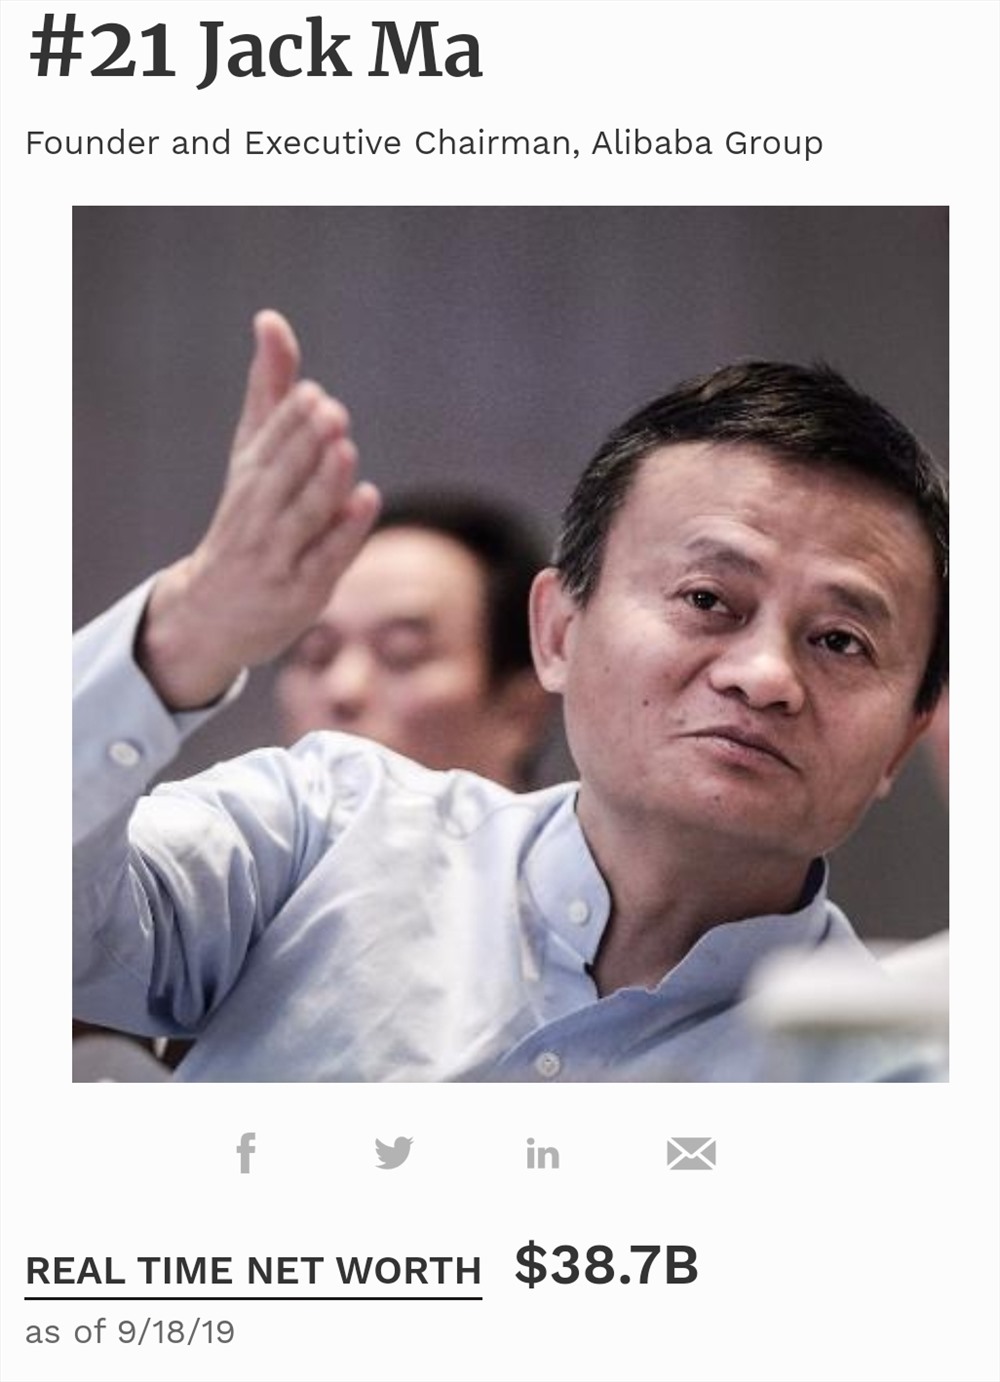 Jack Ma sinh năm 1964 tại Hàng Châu, Trung Quốc. Ông hiện là người giàu nhất Trung Quốc, thứ 21 thế giới với tài sản khoảng 38,7 tỉ USD (theo cập nhật mới nhất từ Forbes).